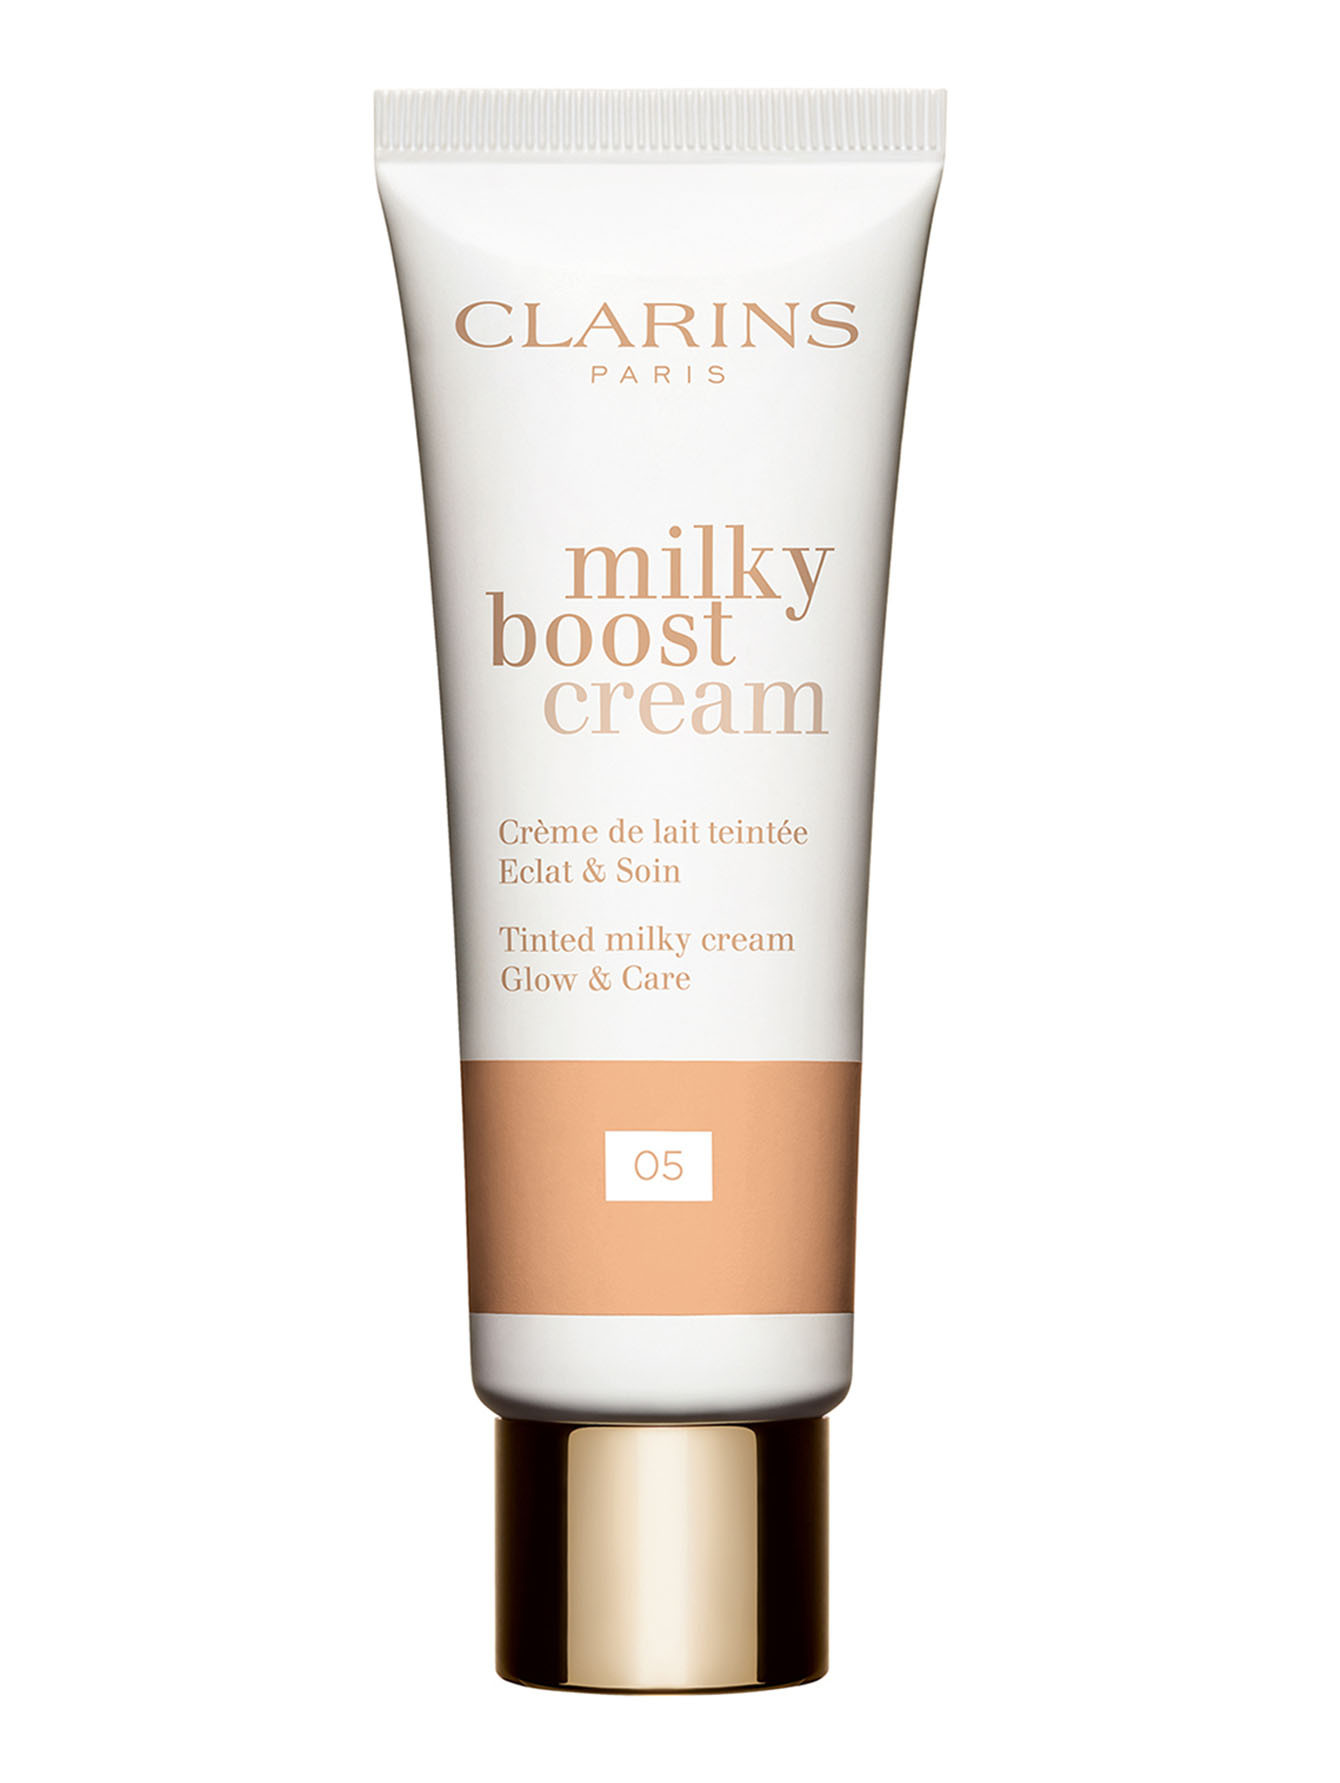 Тональный крем с эффектом сияния Milky Boost Cream, 05, 145 мл - Общий вид